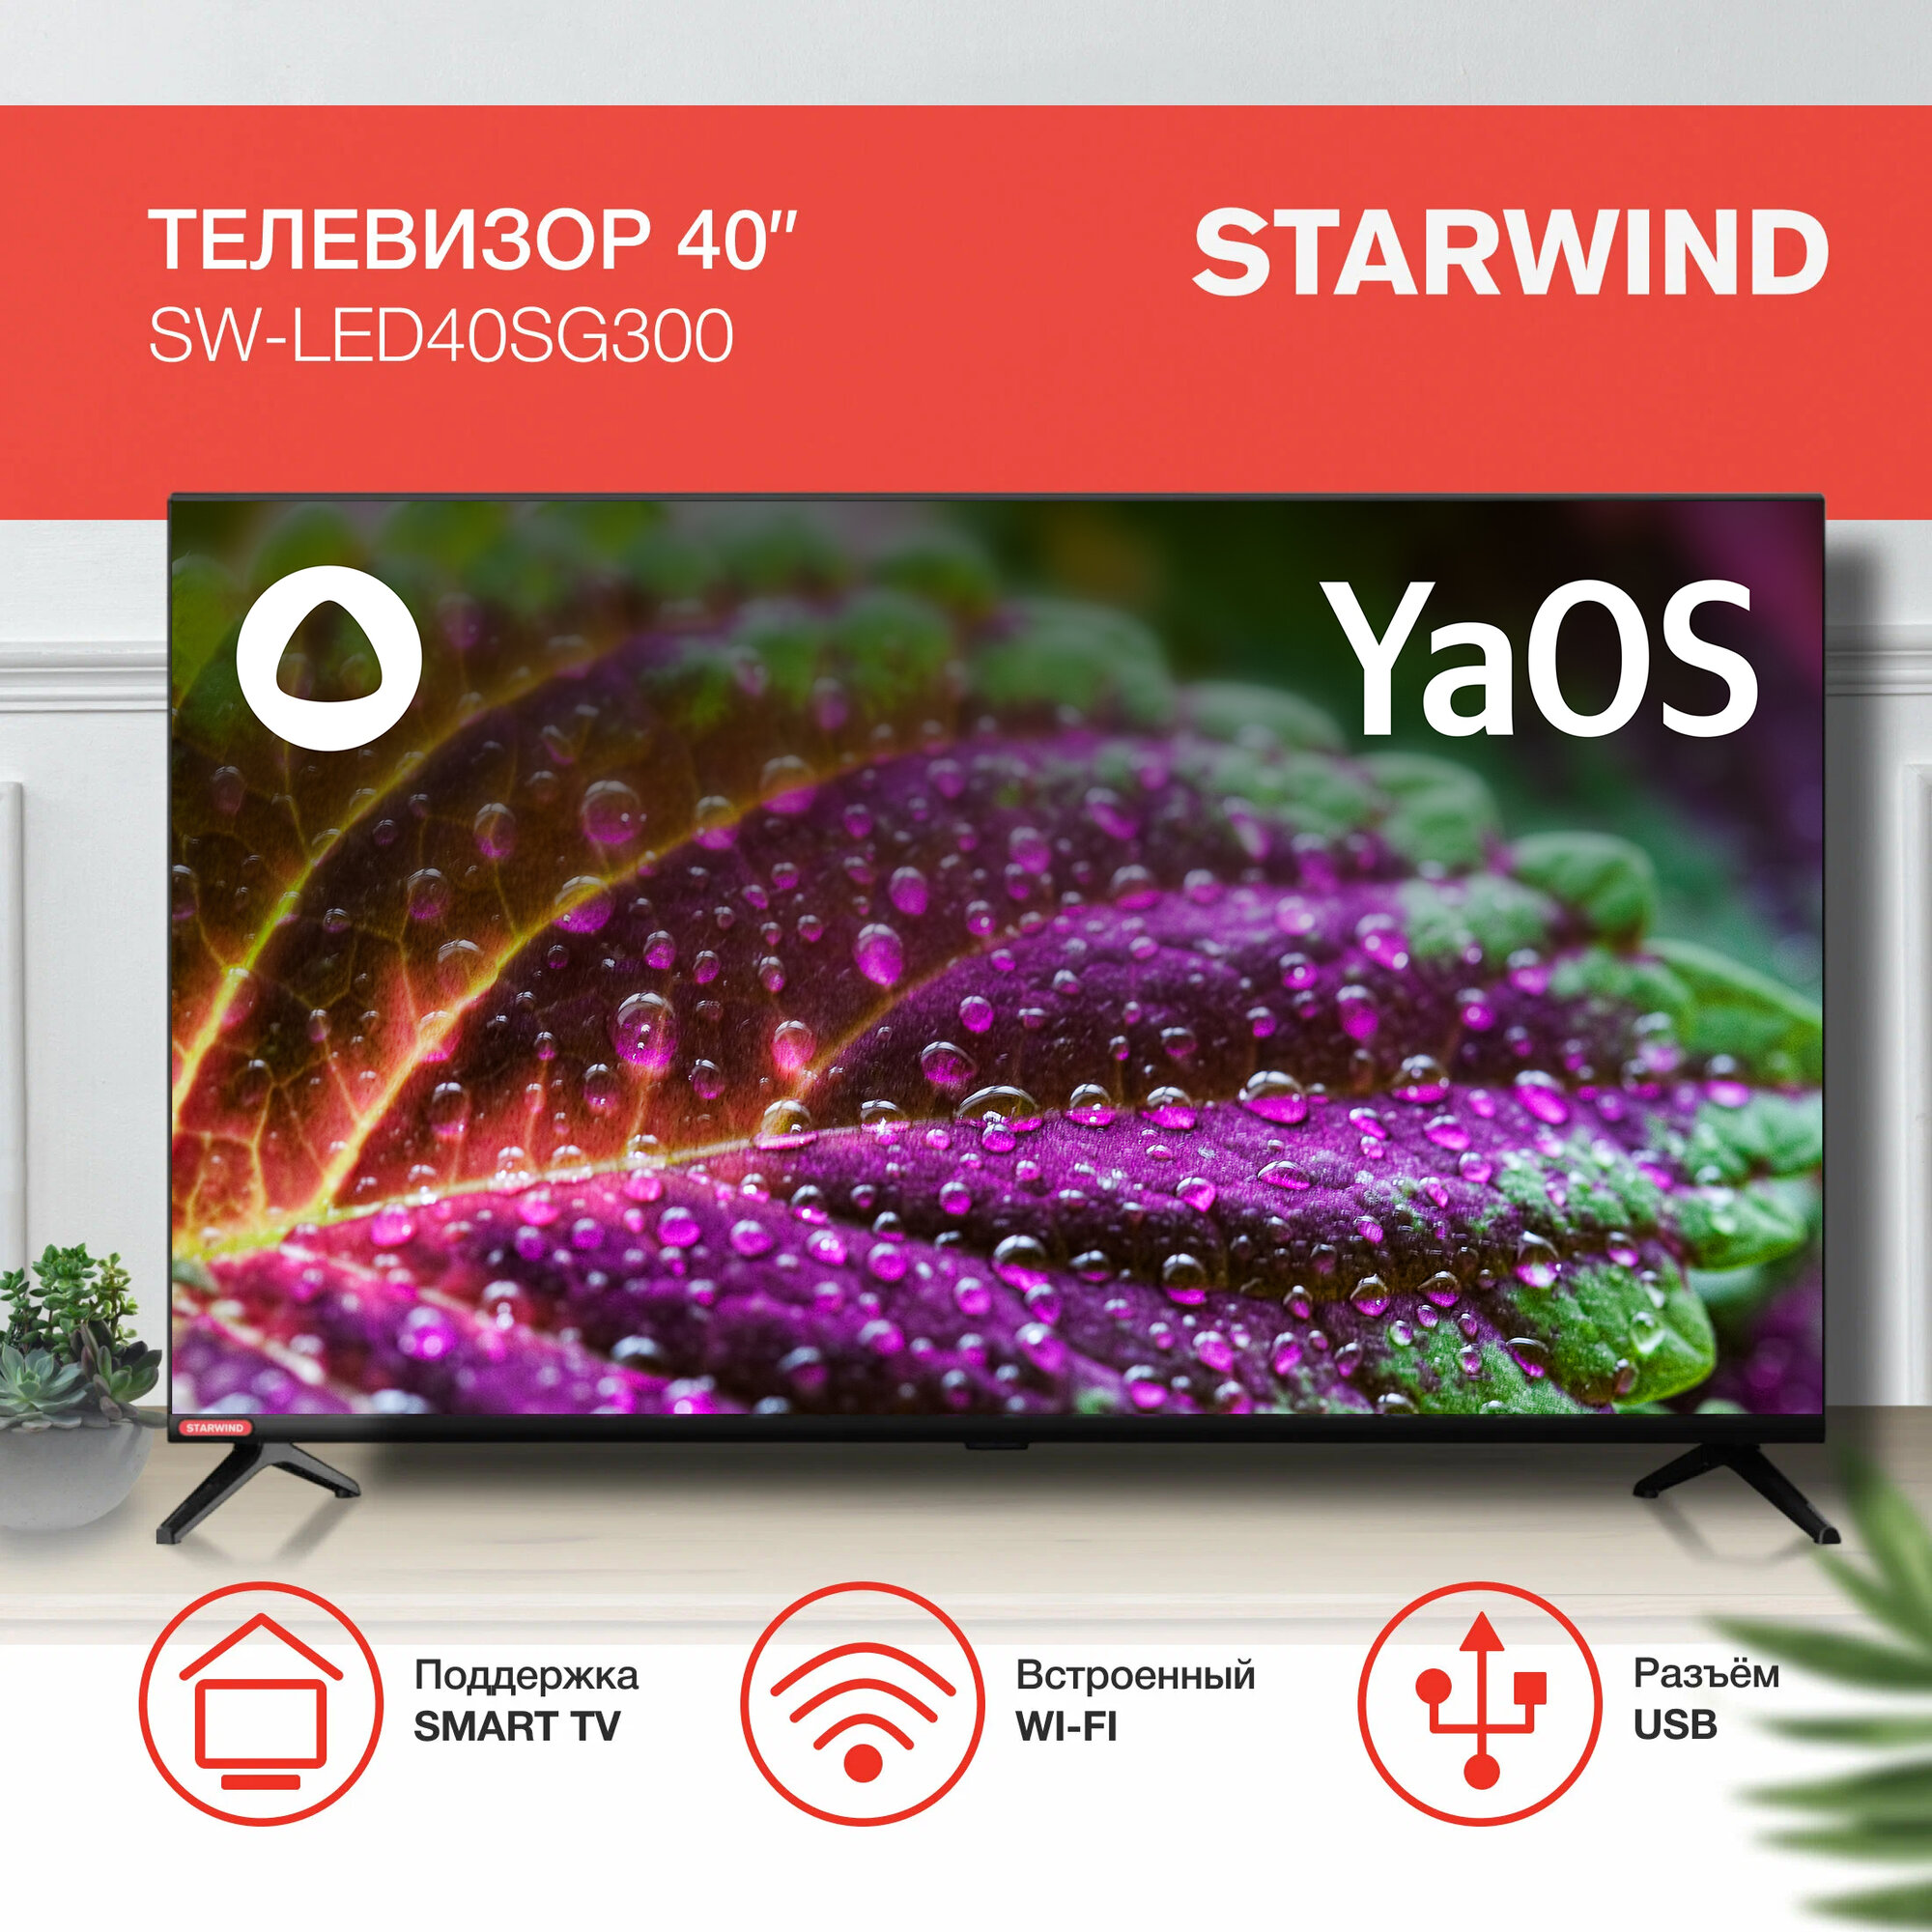 Телевизор Starwind Яндекс.ТВ SW-LED40SG300, 40", LED, FULL HD, черный - фото №3